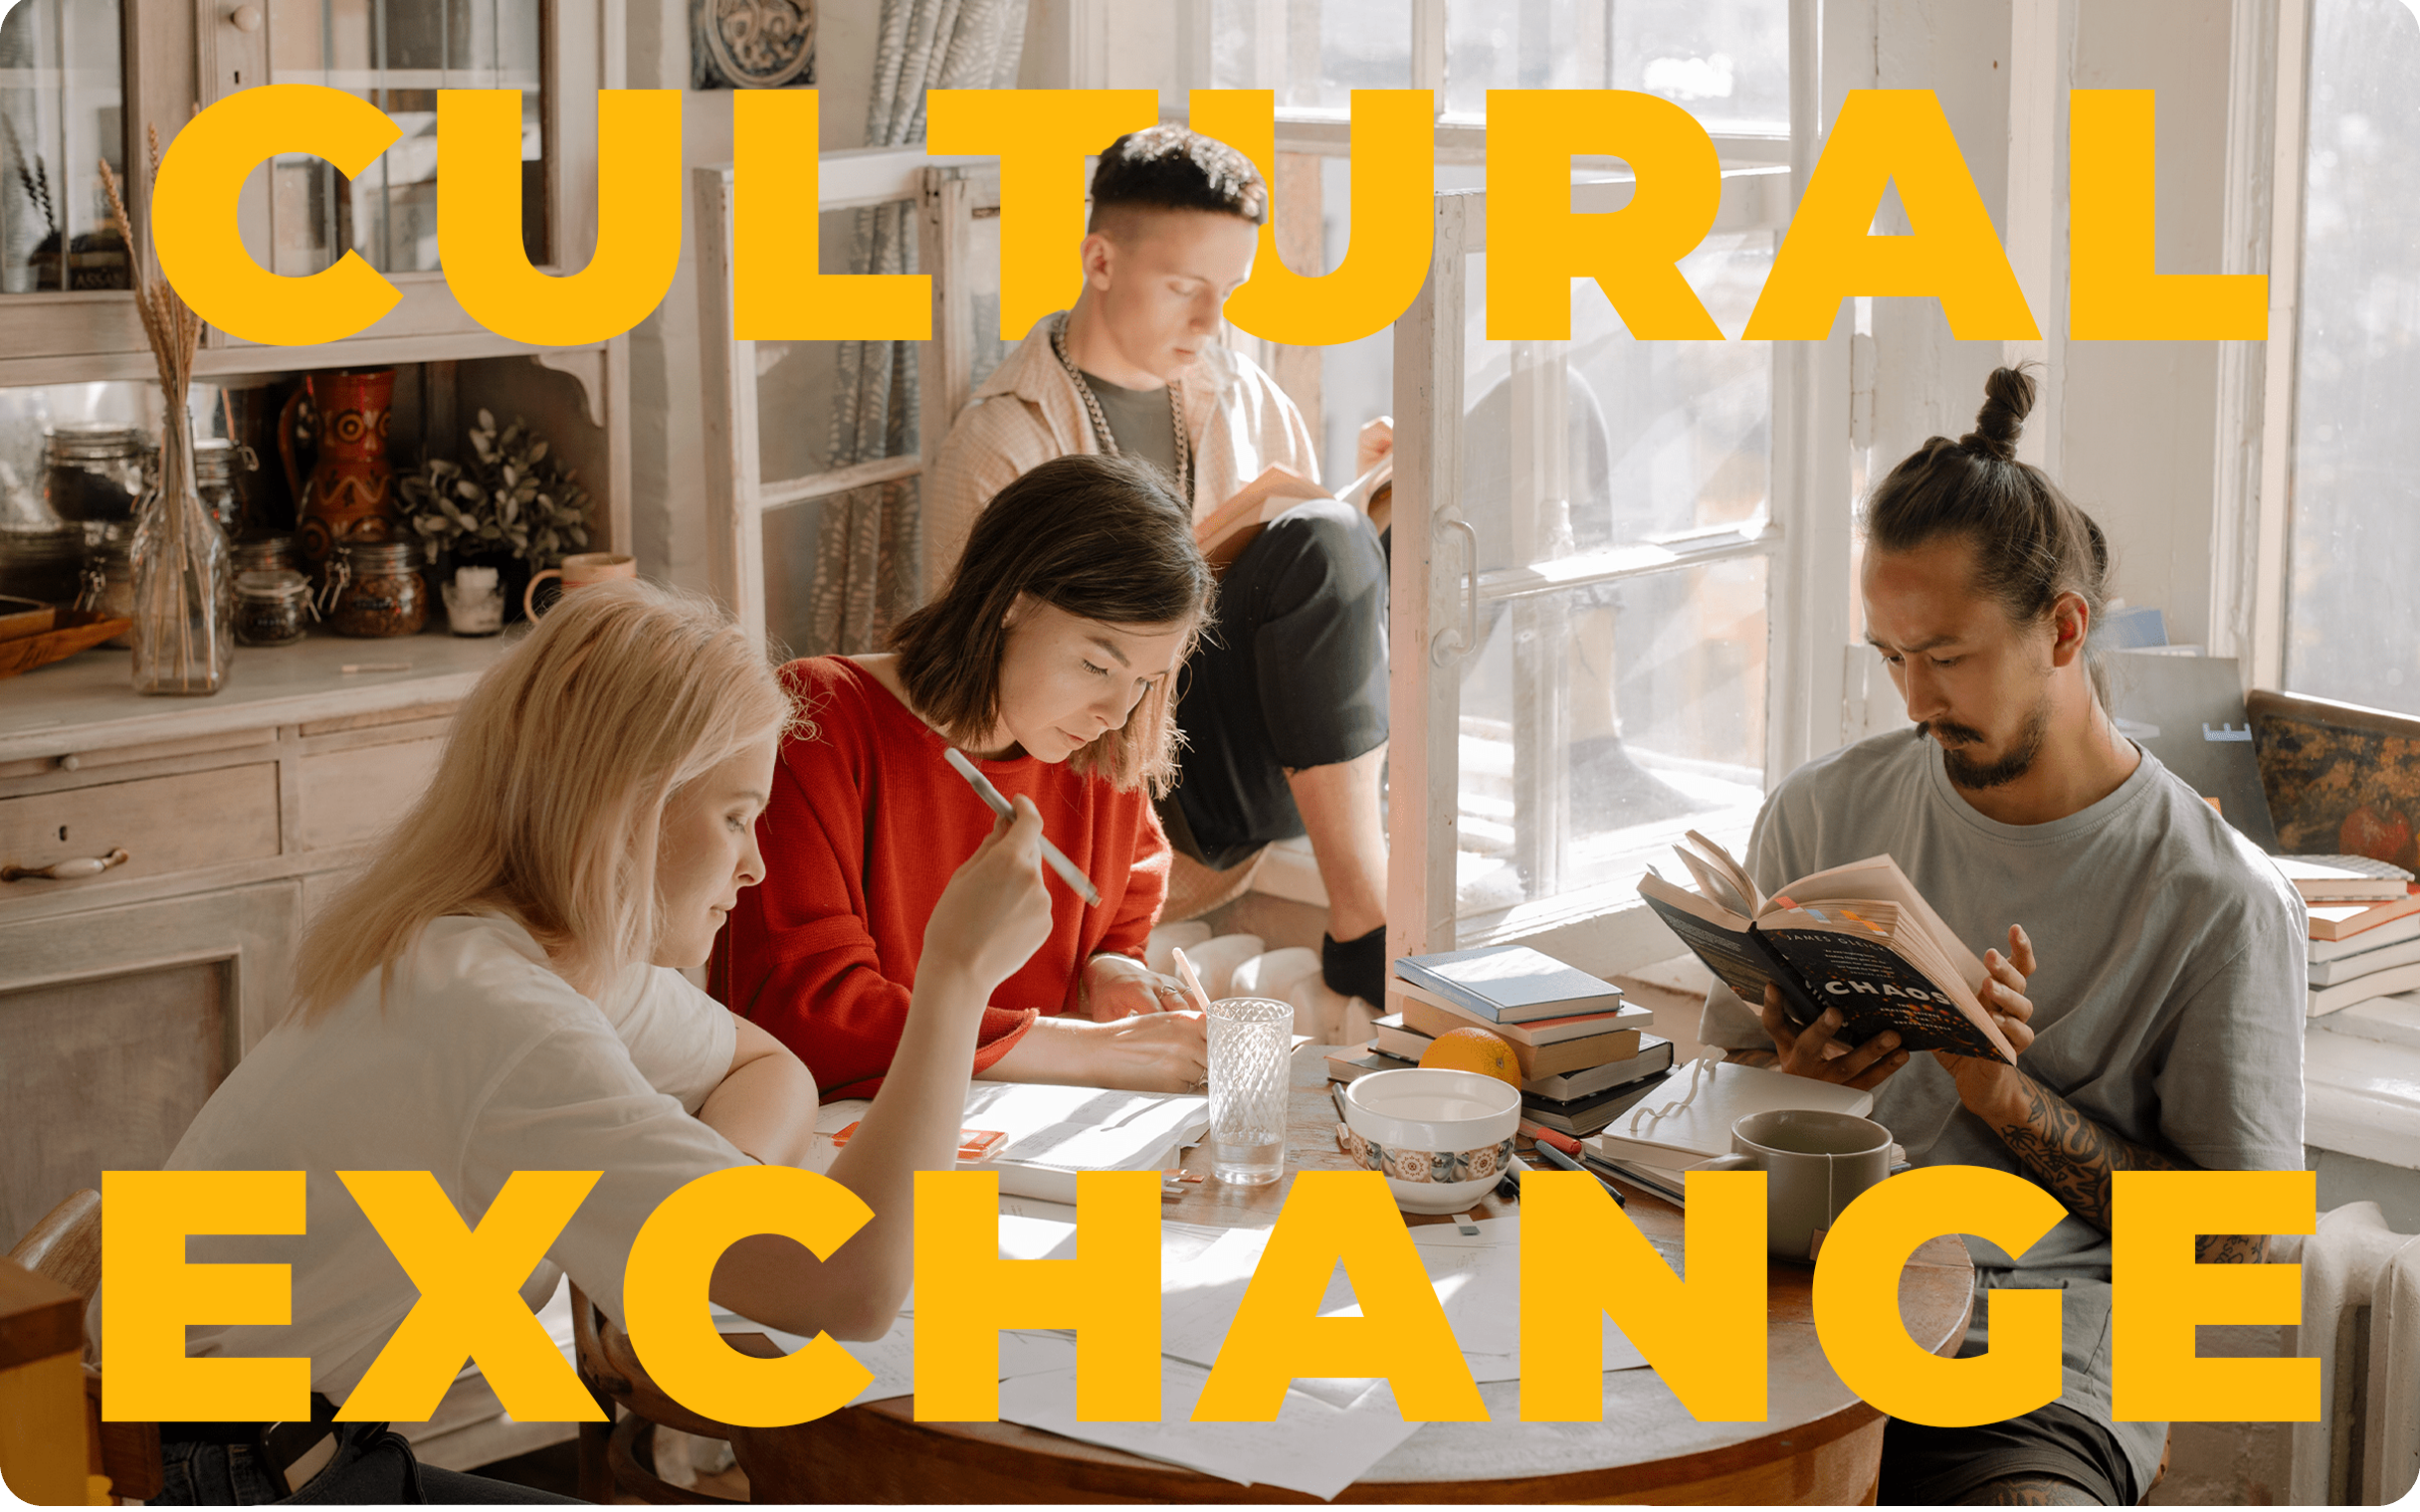 Kultureller Austausch durch Sprache: Verbindungen über Grenzen hinweg